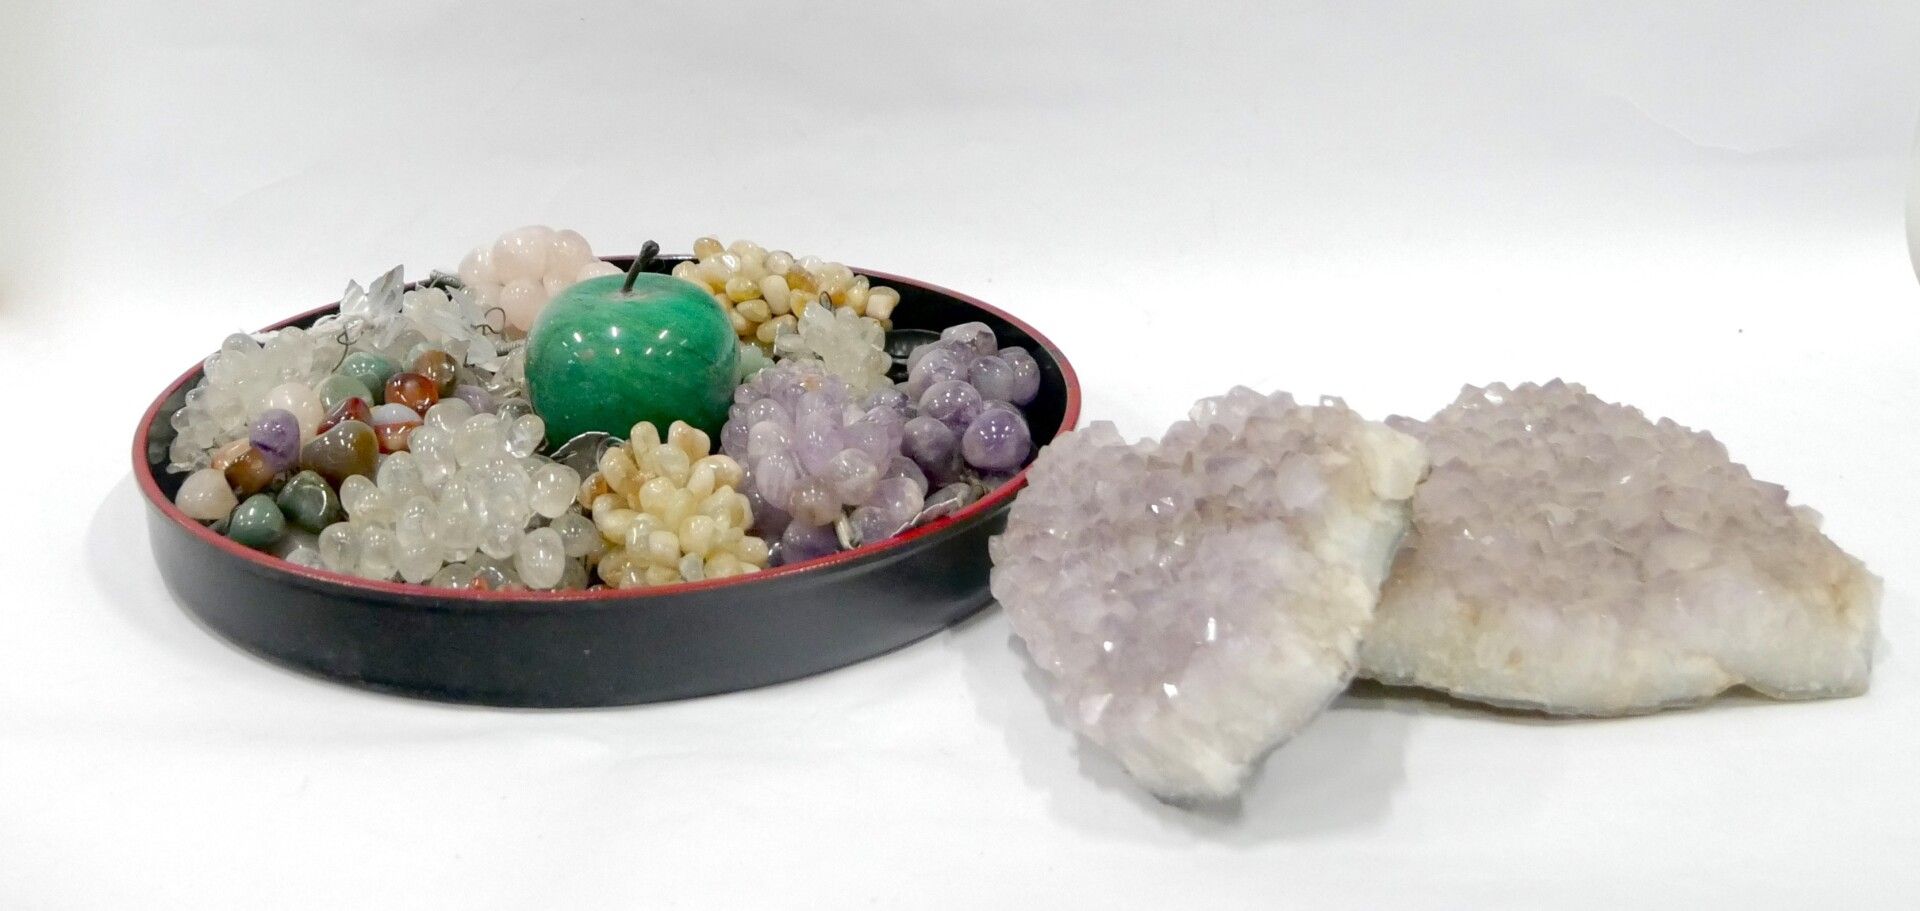 Null 自然界

由两颗紫水晶、一串葡萄和一个苹果组成的各种硬石拍品

大紫水晶的长：22厘米，8 3/4英寸。

有灰尘，使用状况